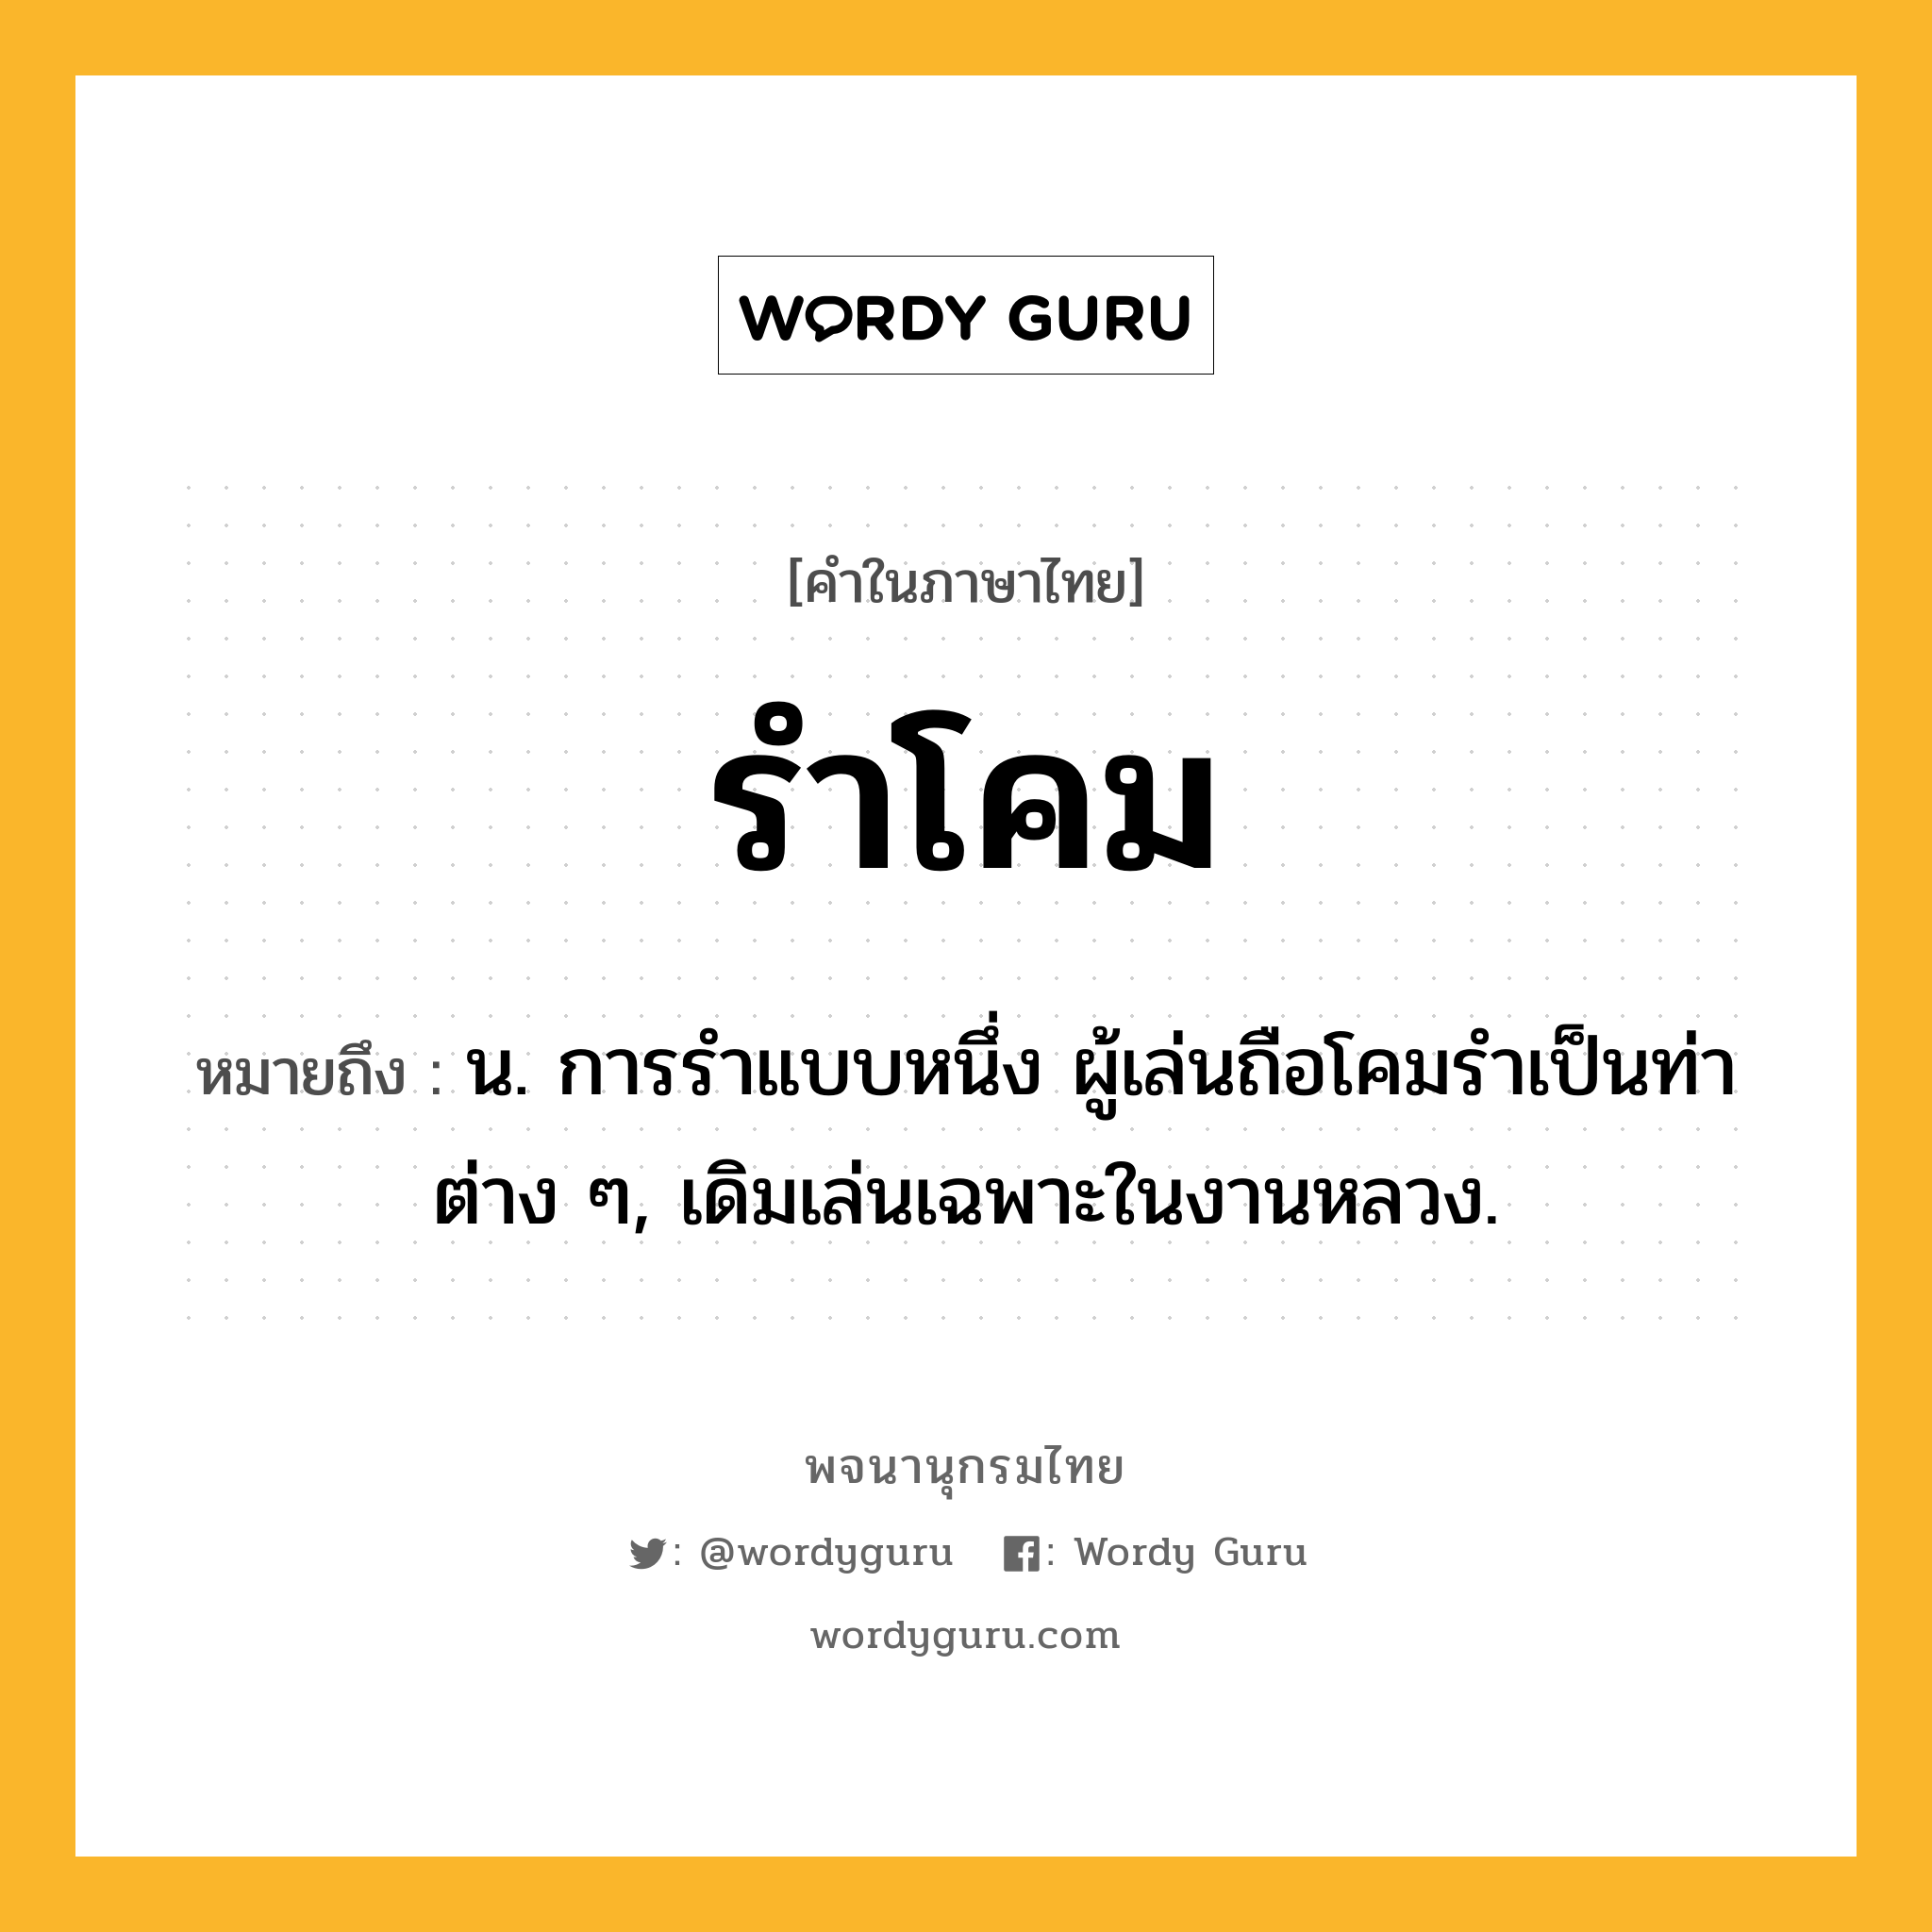 รำโคม หมายถึงอะไร?, คำในภาษาไทย รำโคม หมายถึง น. การรําแบบหนึ่ง ผู้เล่นถือโคมรําเป็นท่าต่าง ๆ, เดิมเล่นเฉพาะในงานหลวง.